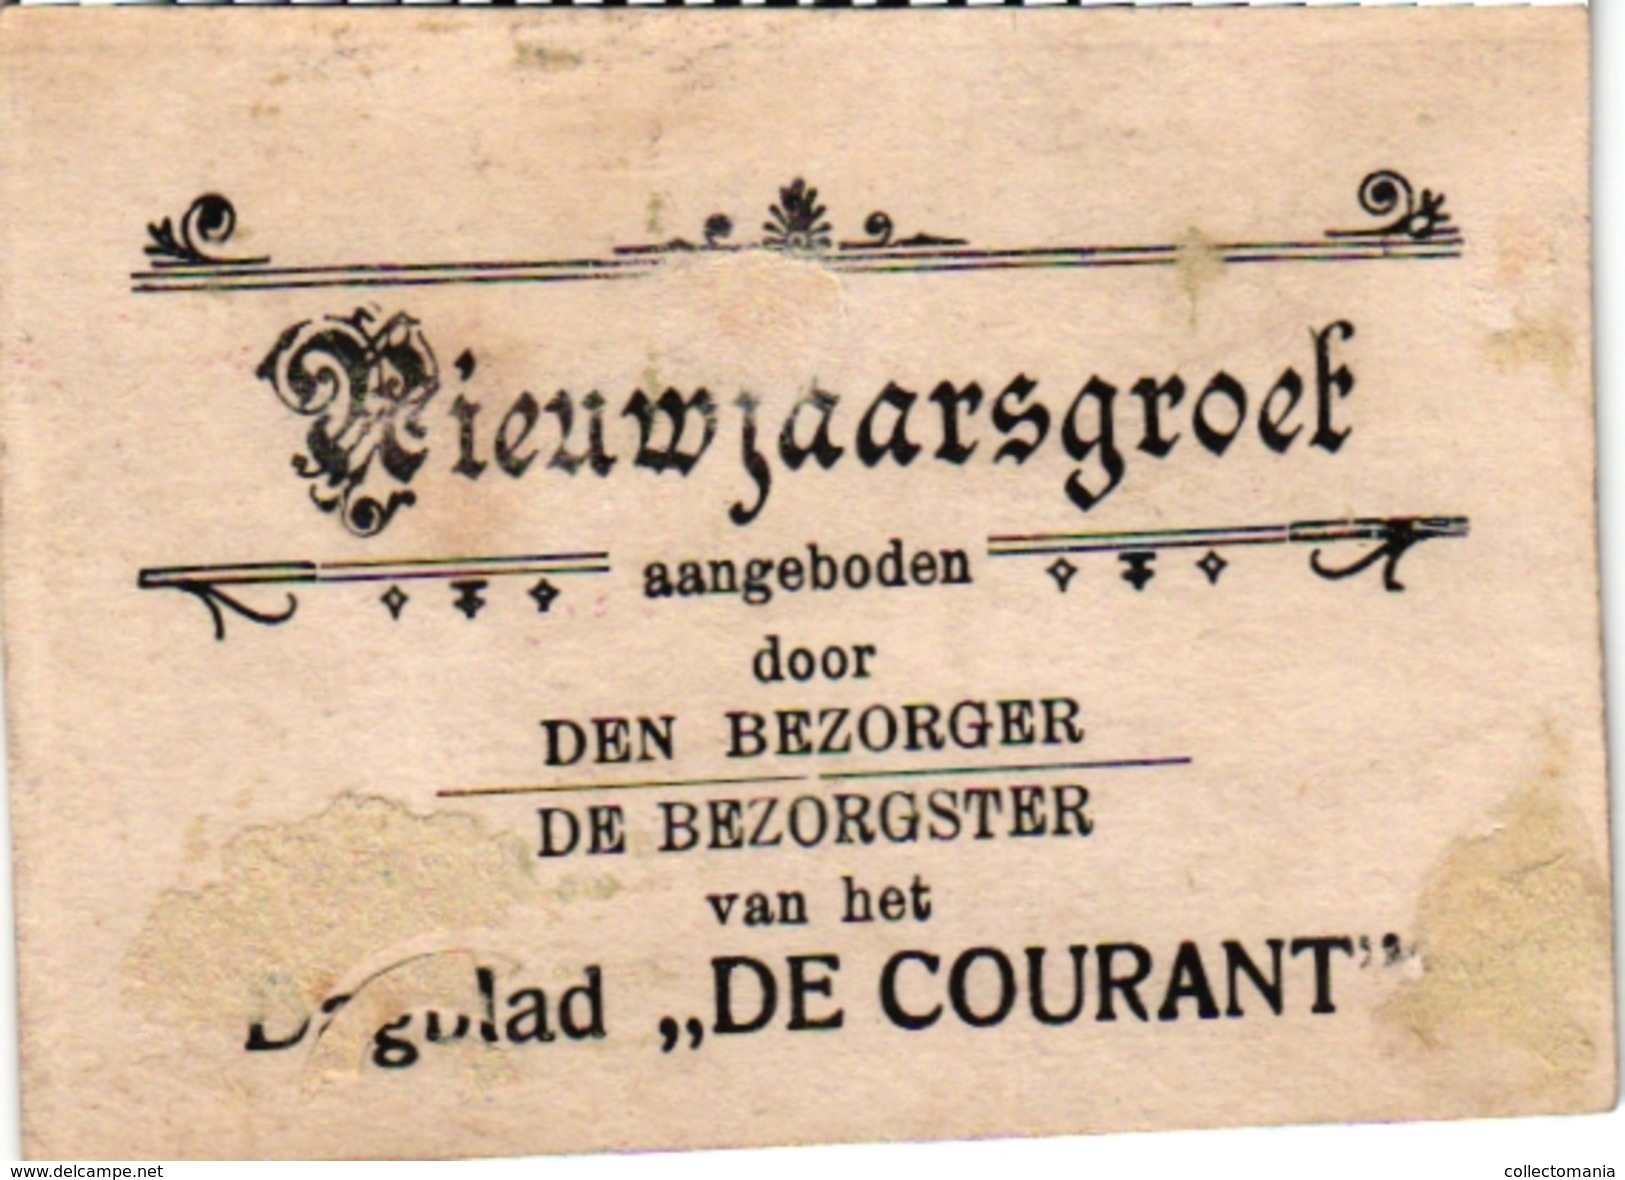 7 Carte de Visite Trade Card Chromo Nieuwjaarsgroet de Courant Weekblad de Aanwijzer Morgenblad 1885 dagblad weekblad